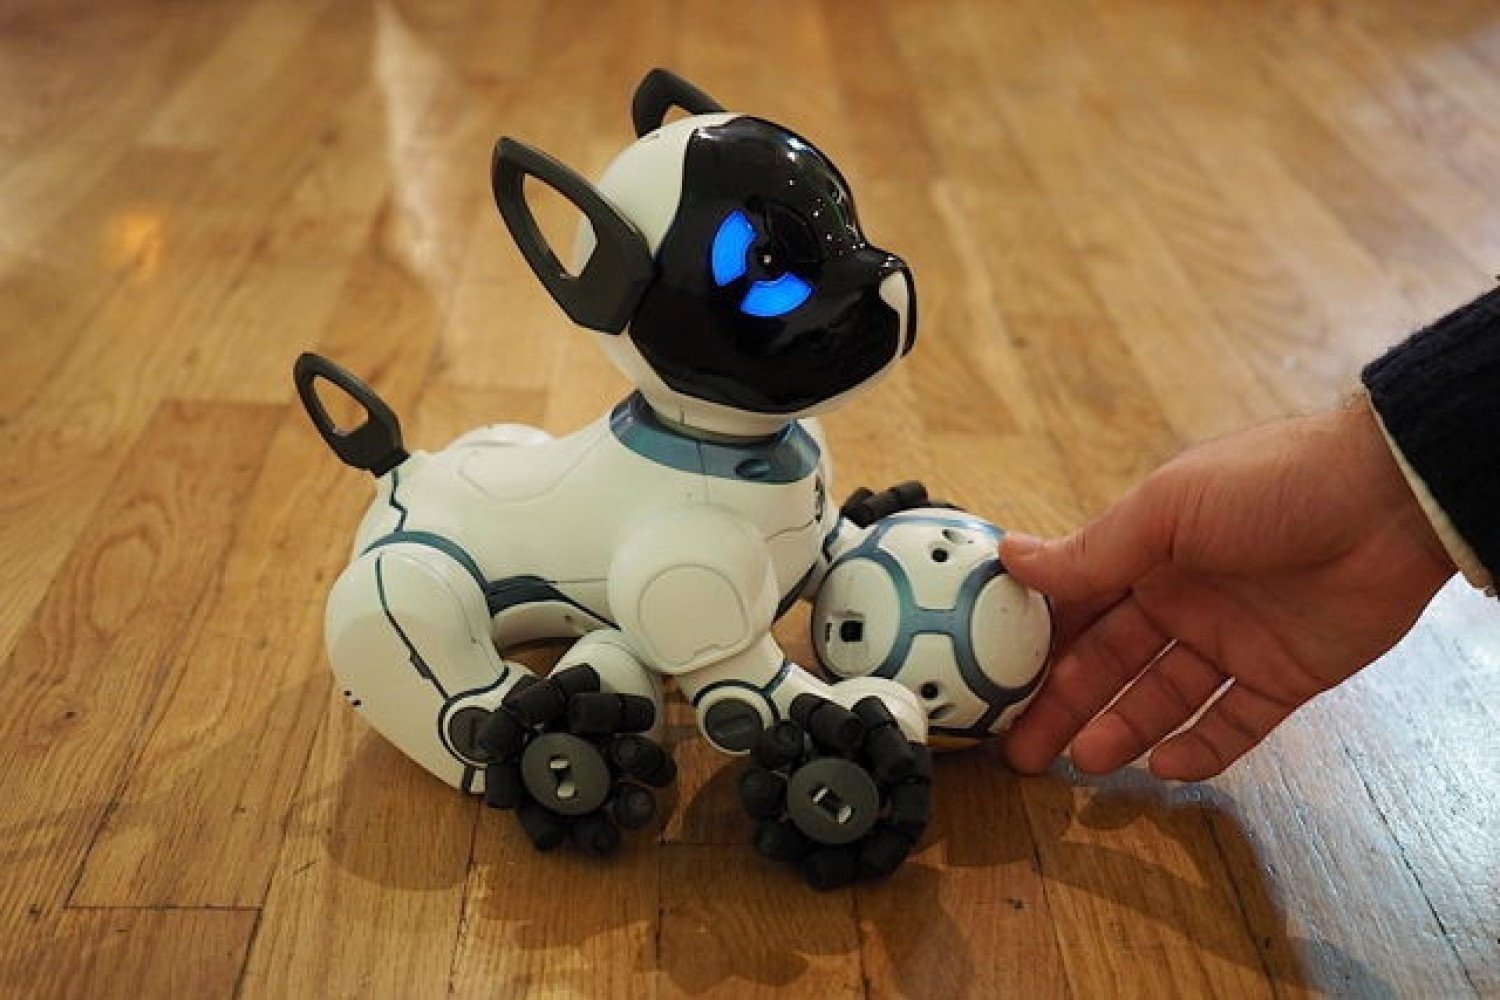 Видео хороших игрушек. Робот собака WOWWEE Chip. Робот WOWWEE собачка чип 0805eu. Робот-собака чип 805 WOWWEE. Робопес далматинец.